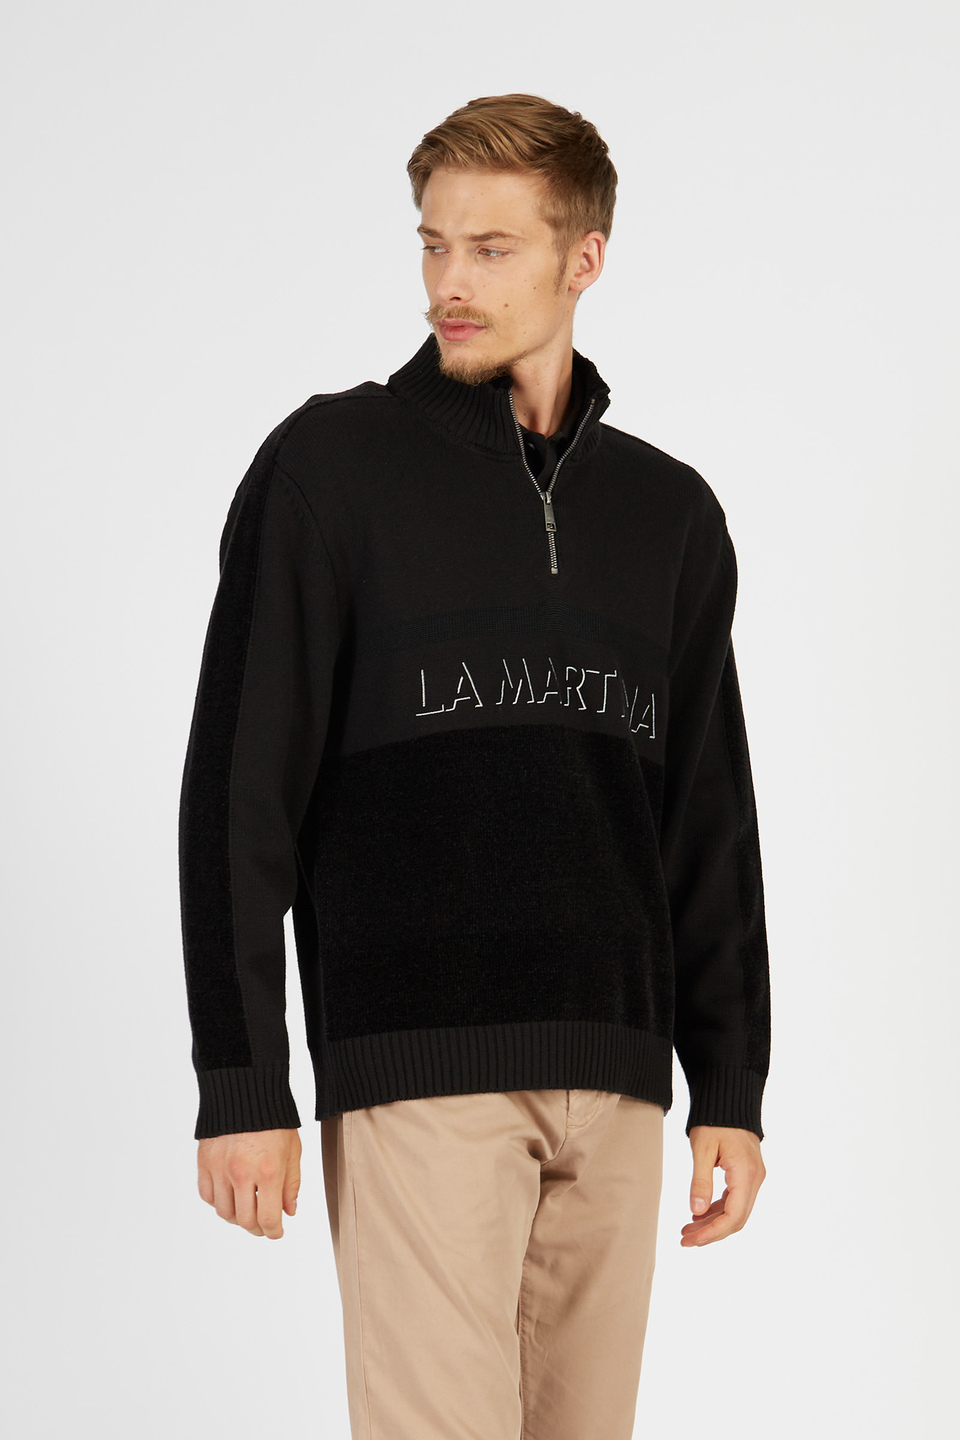 Herrenstrickpullover mit langen Ärmeln aus Baumwoll- und Wollmischung | La Martina - Official Online Shop